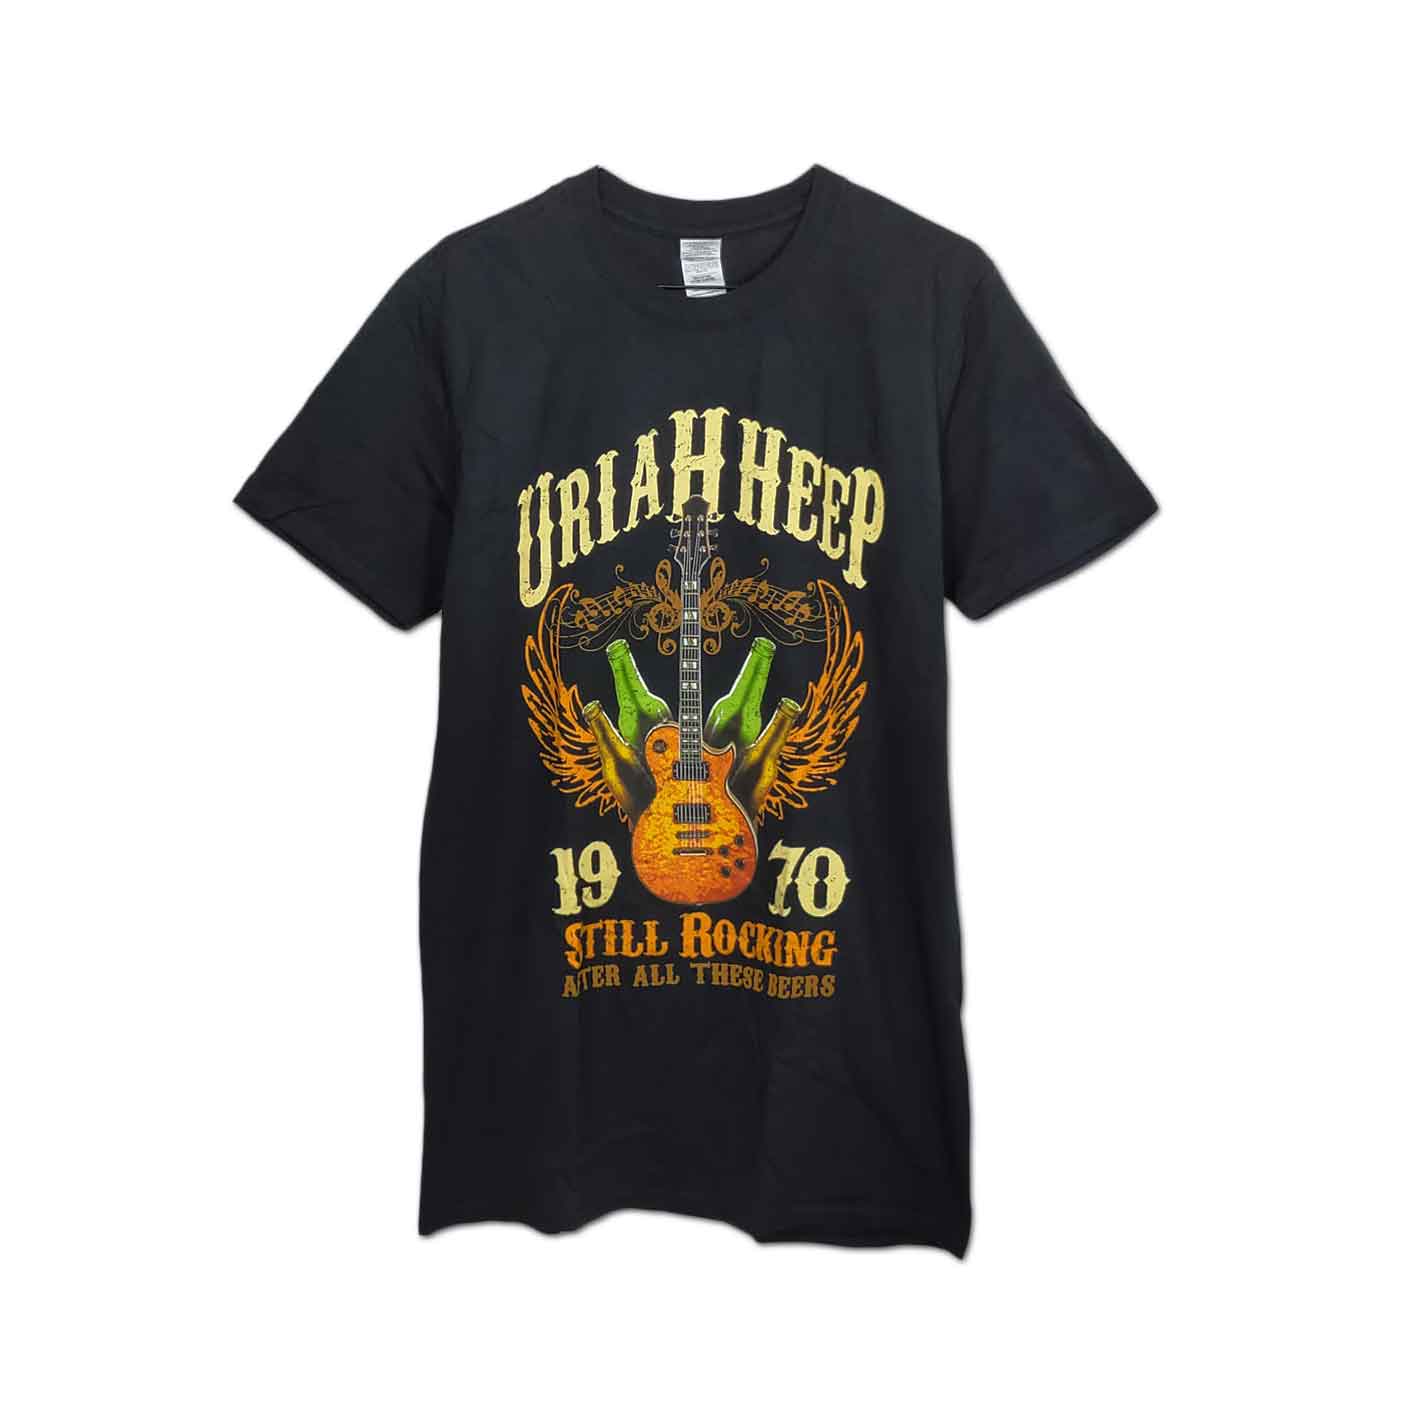 Uriah Heep バンドTシャツ ユーライア・ヒープ Still Rocking                                        [12062911]